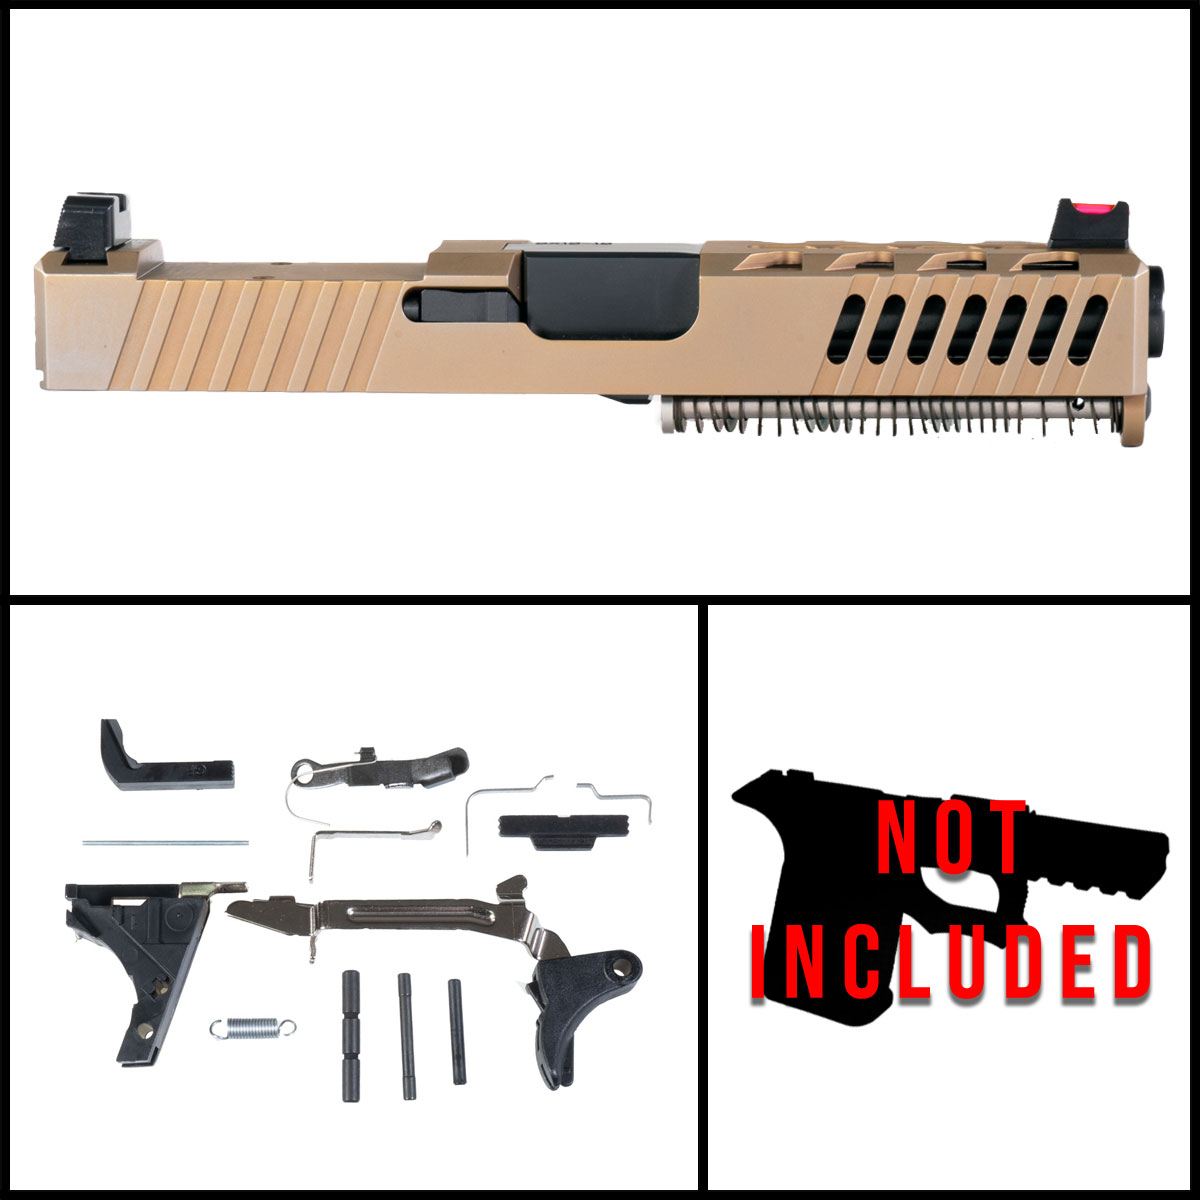 DTT '2833K' 9mm Full Pistol Build Kit (Everything Minus Frame) - Glock 19 Compatible